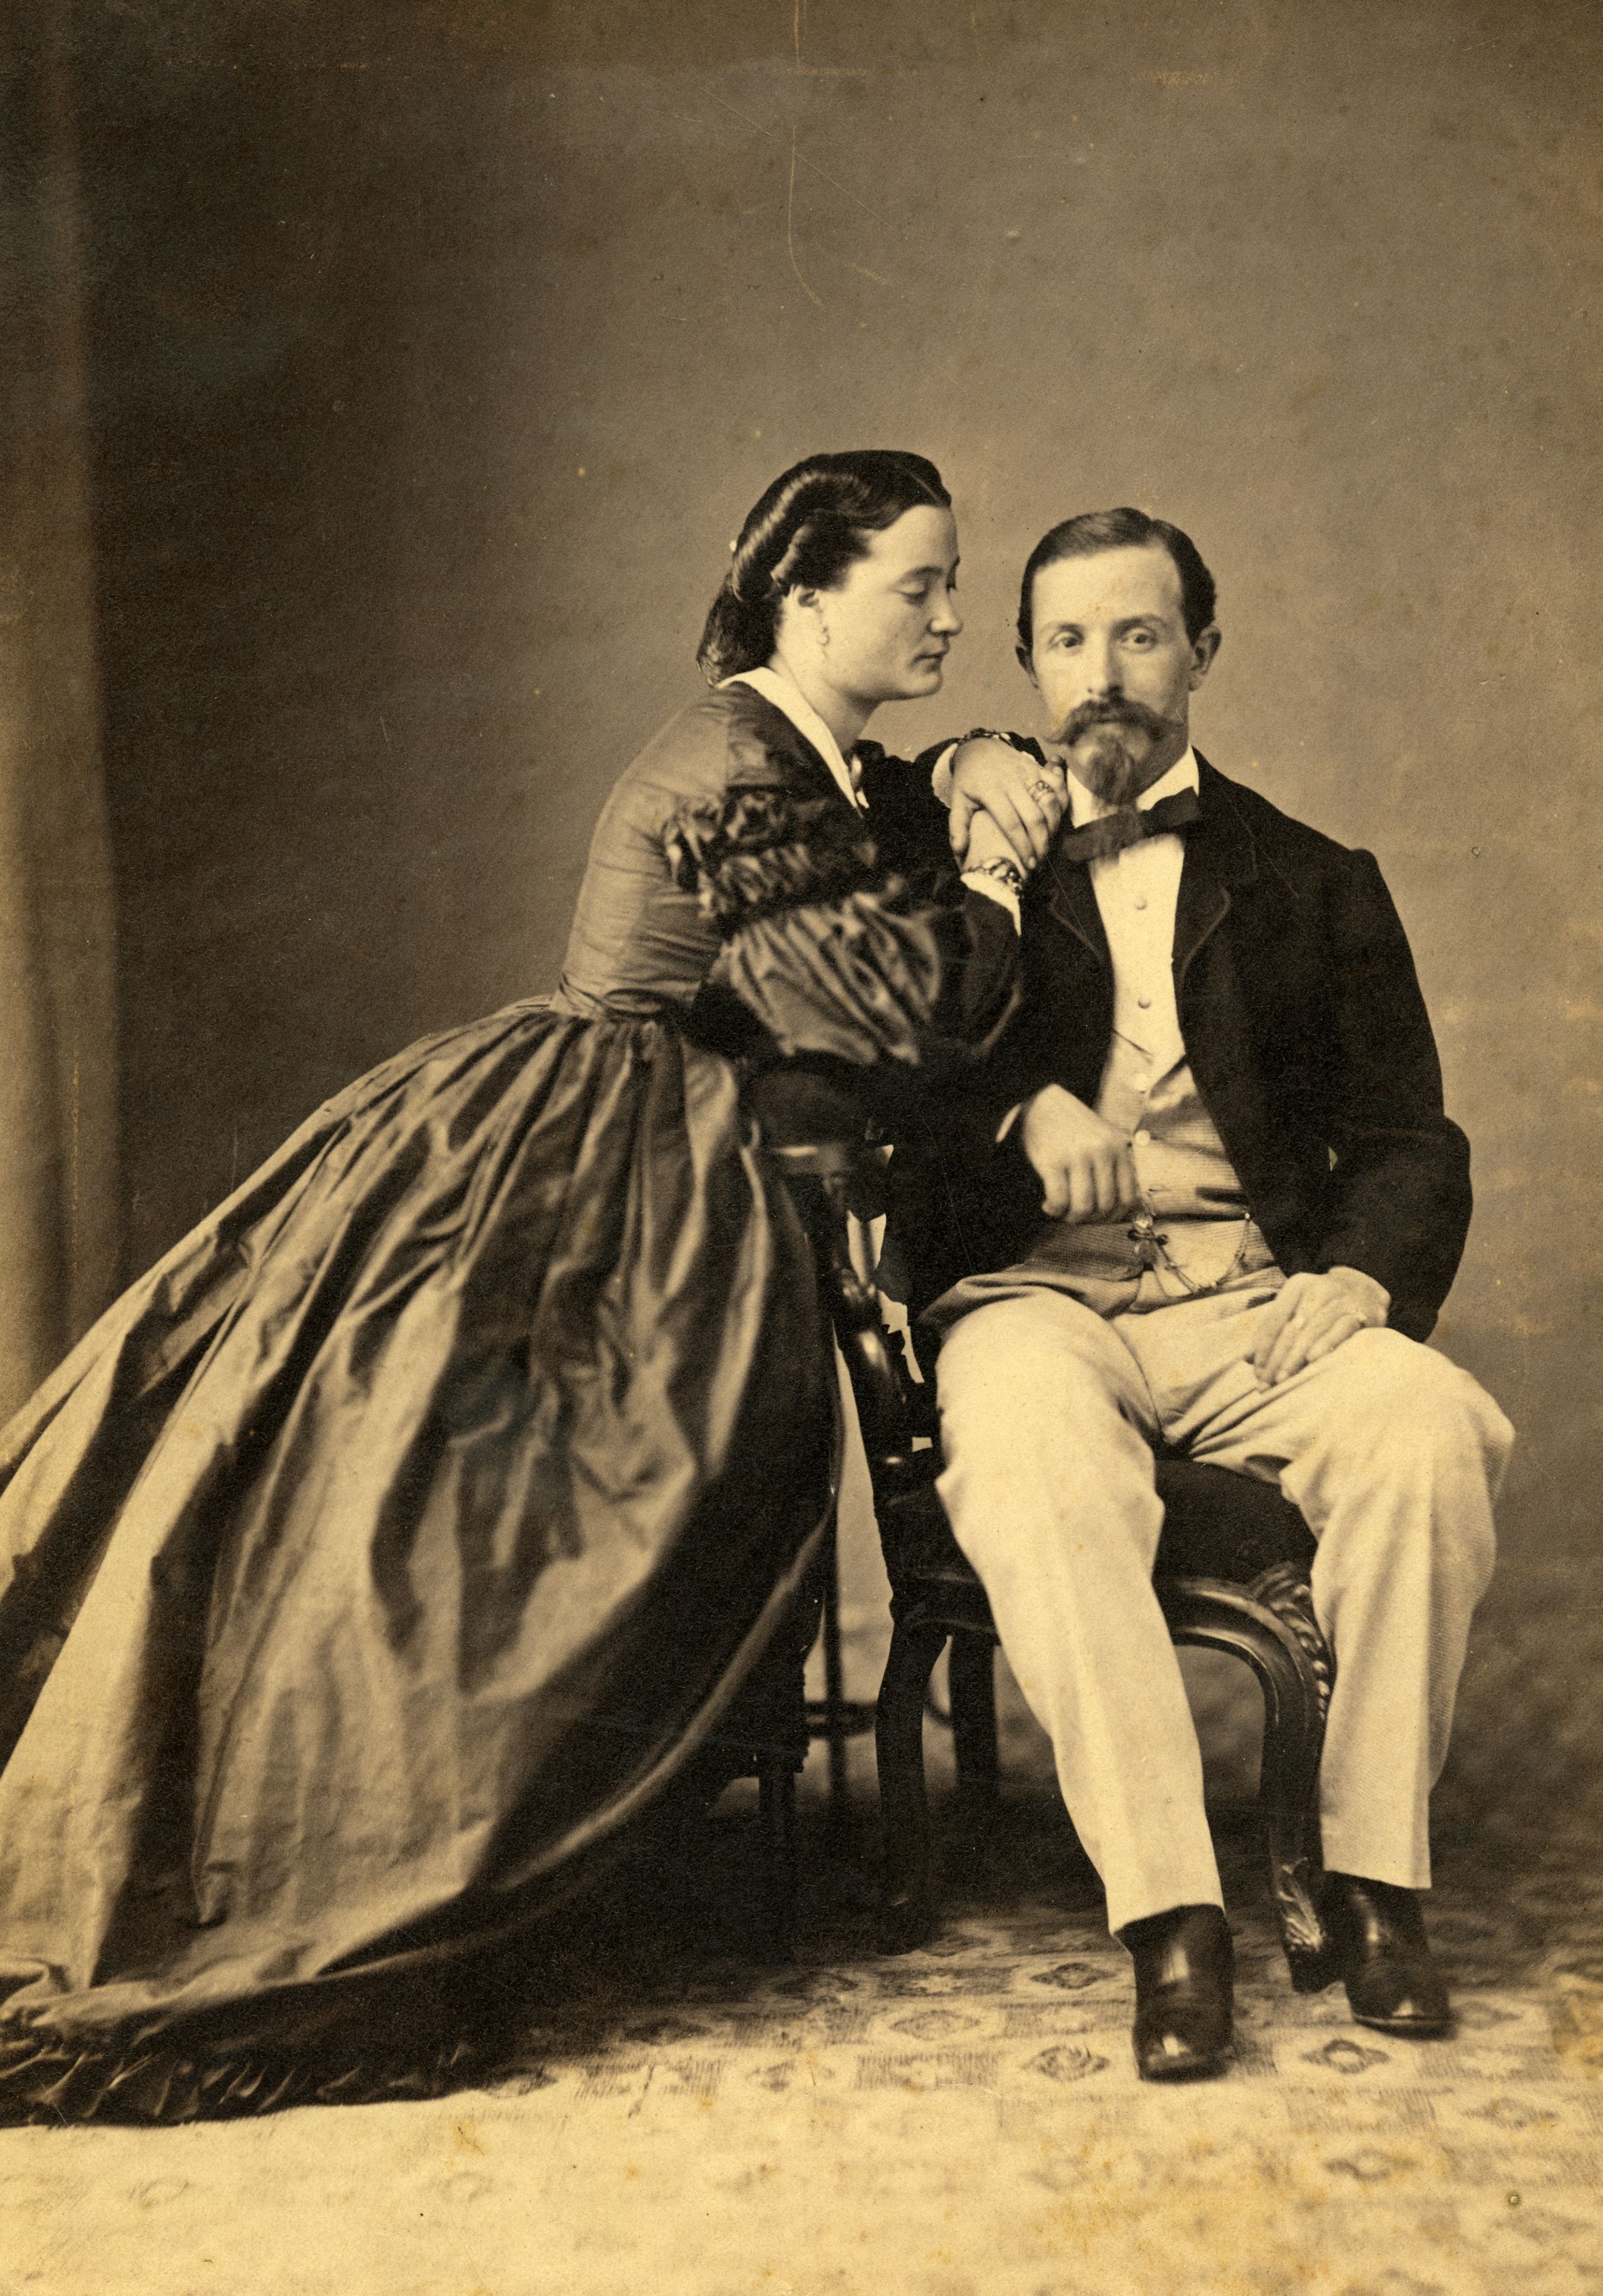 Ritratto di coppia di coniugi in uno studio fotografico, 1860 ca. Fotografo non identificato. Stampa all’albumina